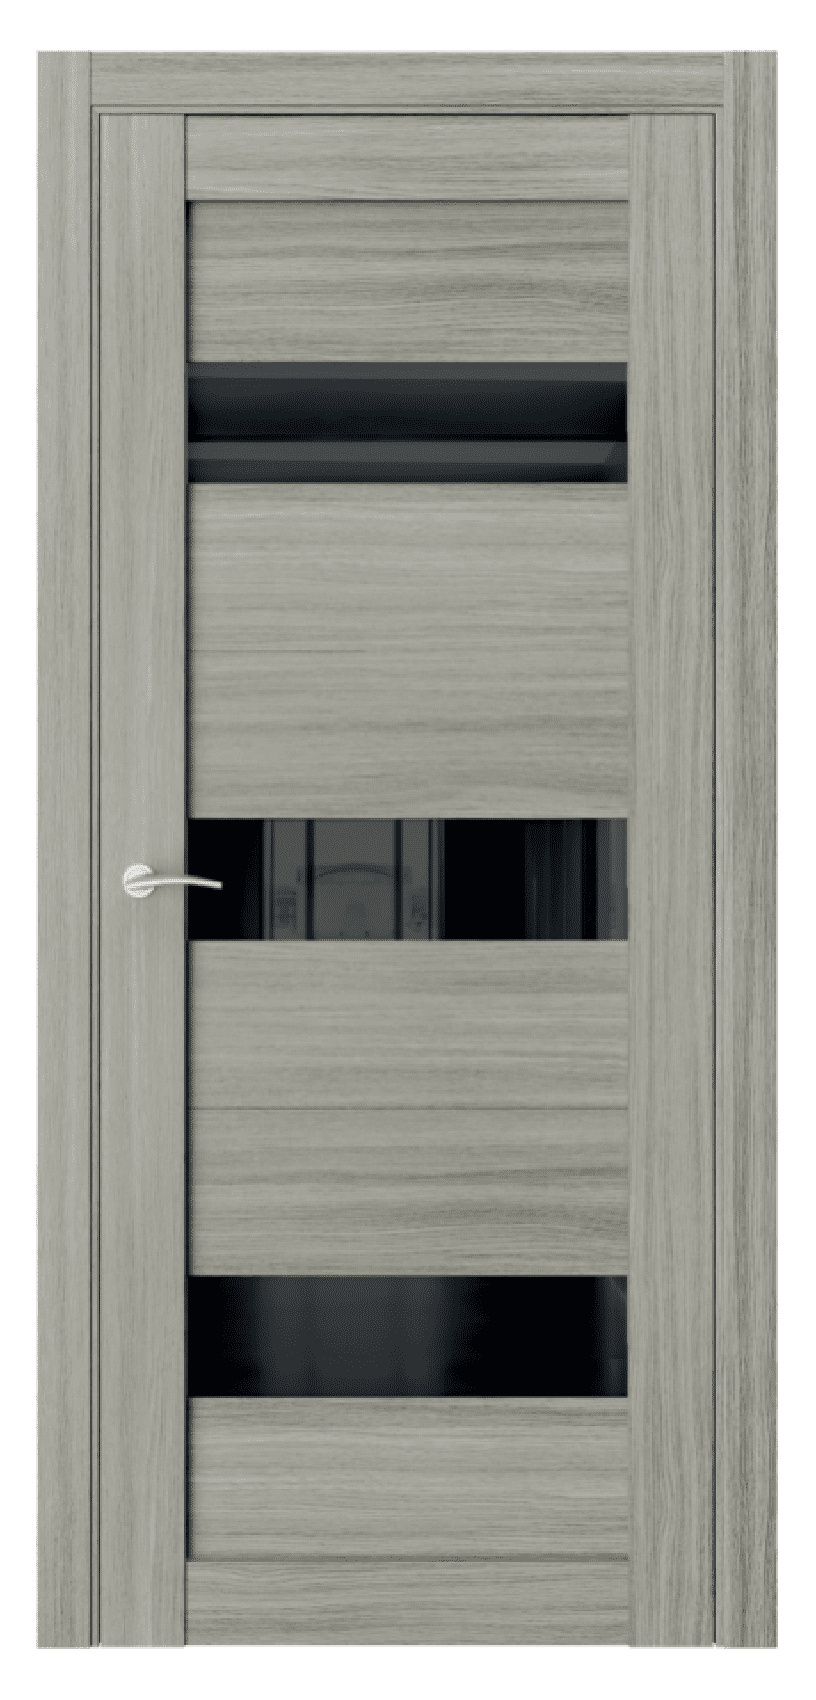 Questdoors Межкомнатная дверь Q9, арт. 17461 - фото №1